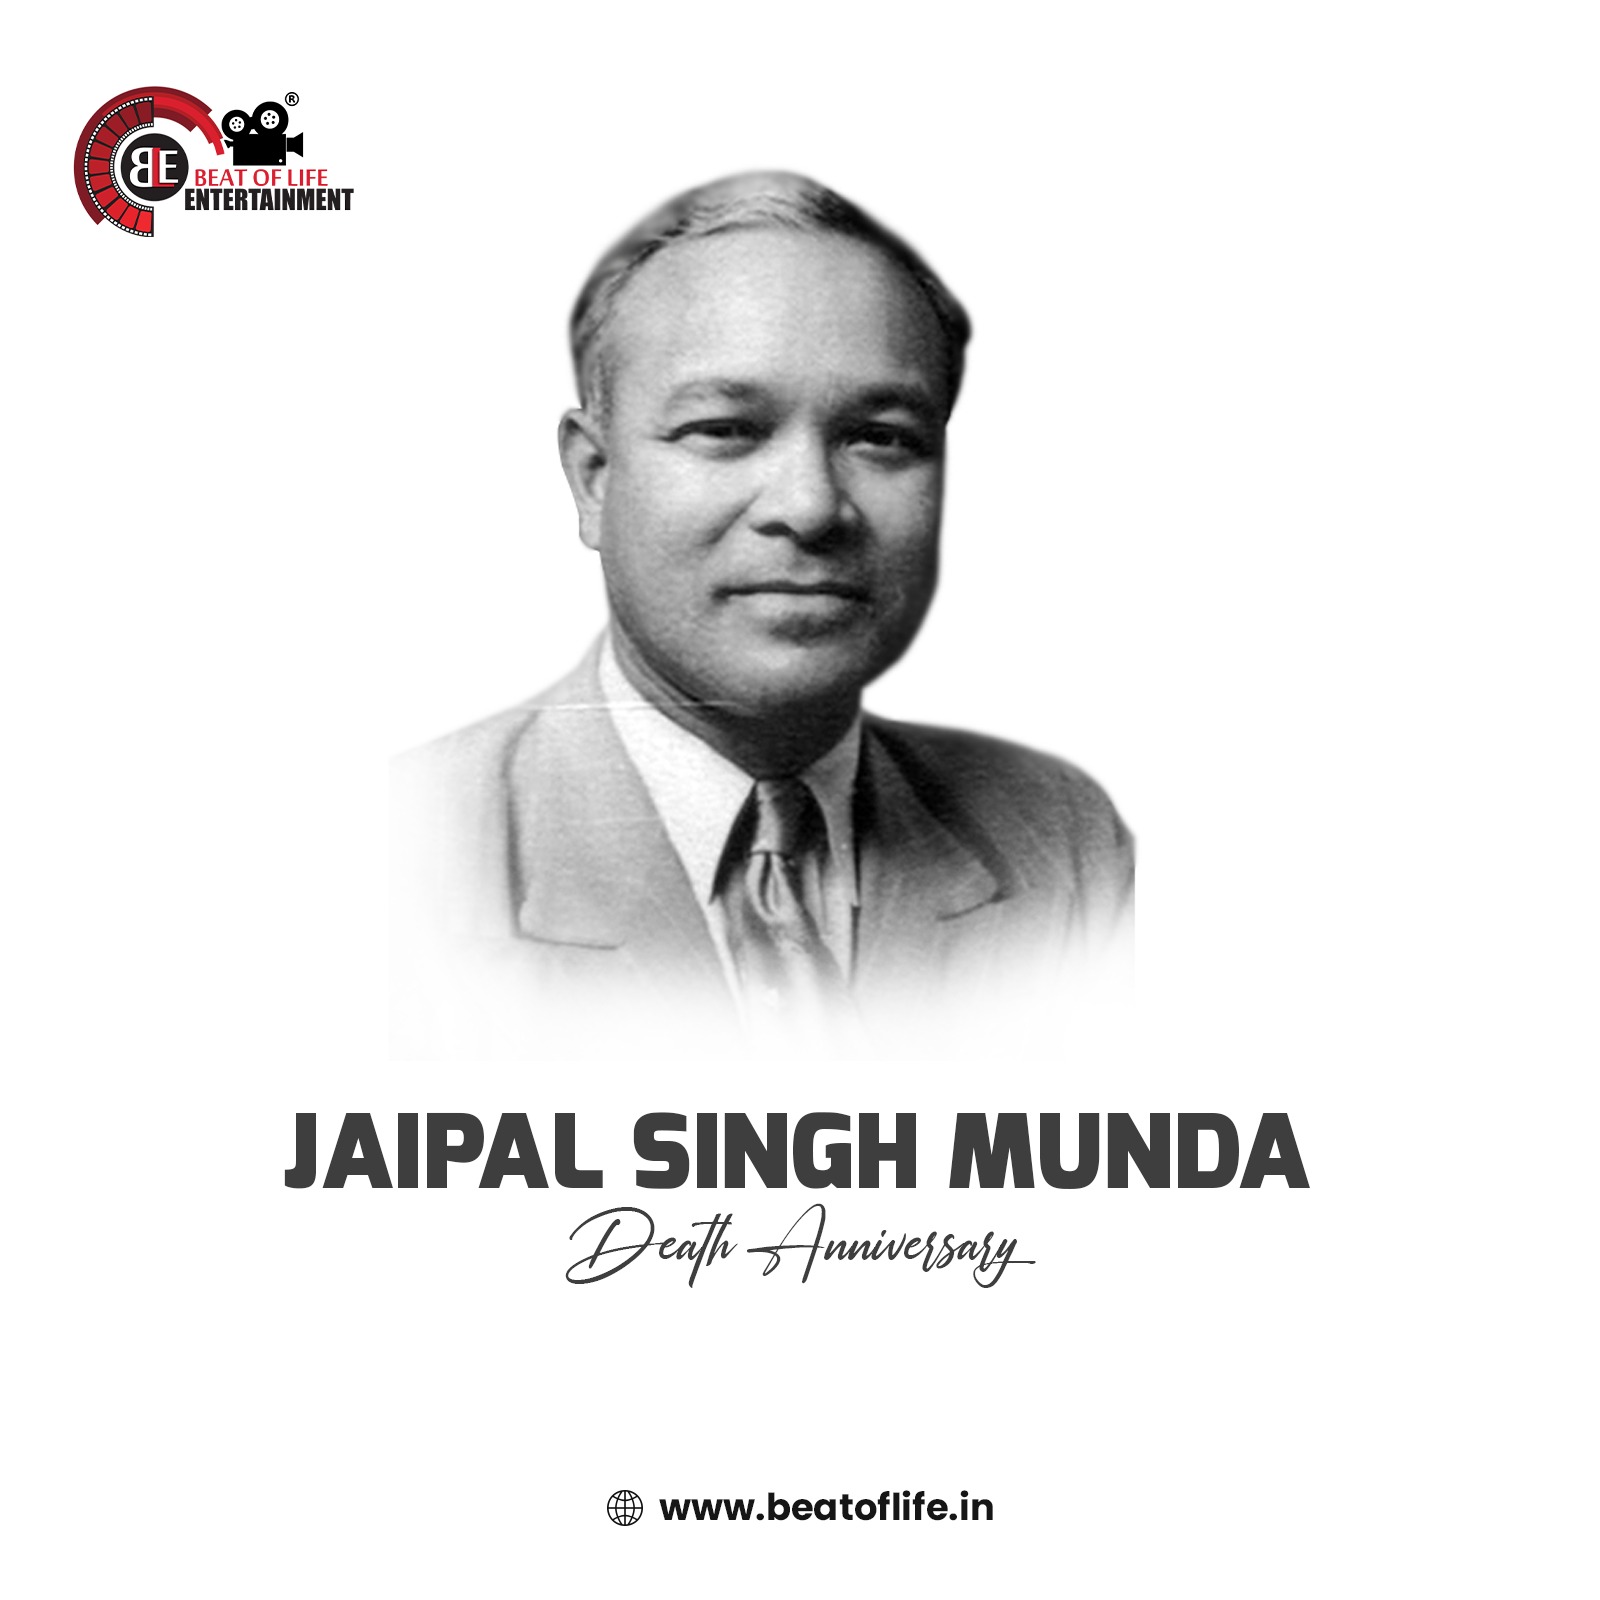 Jaipal Singh Munda